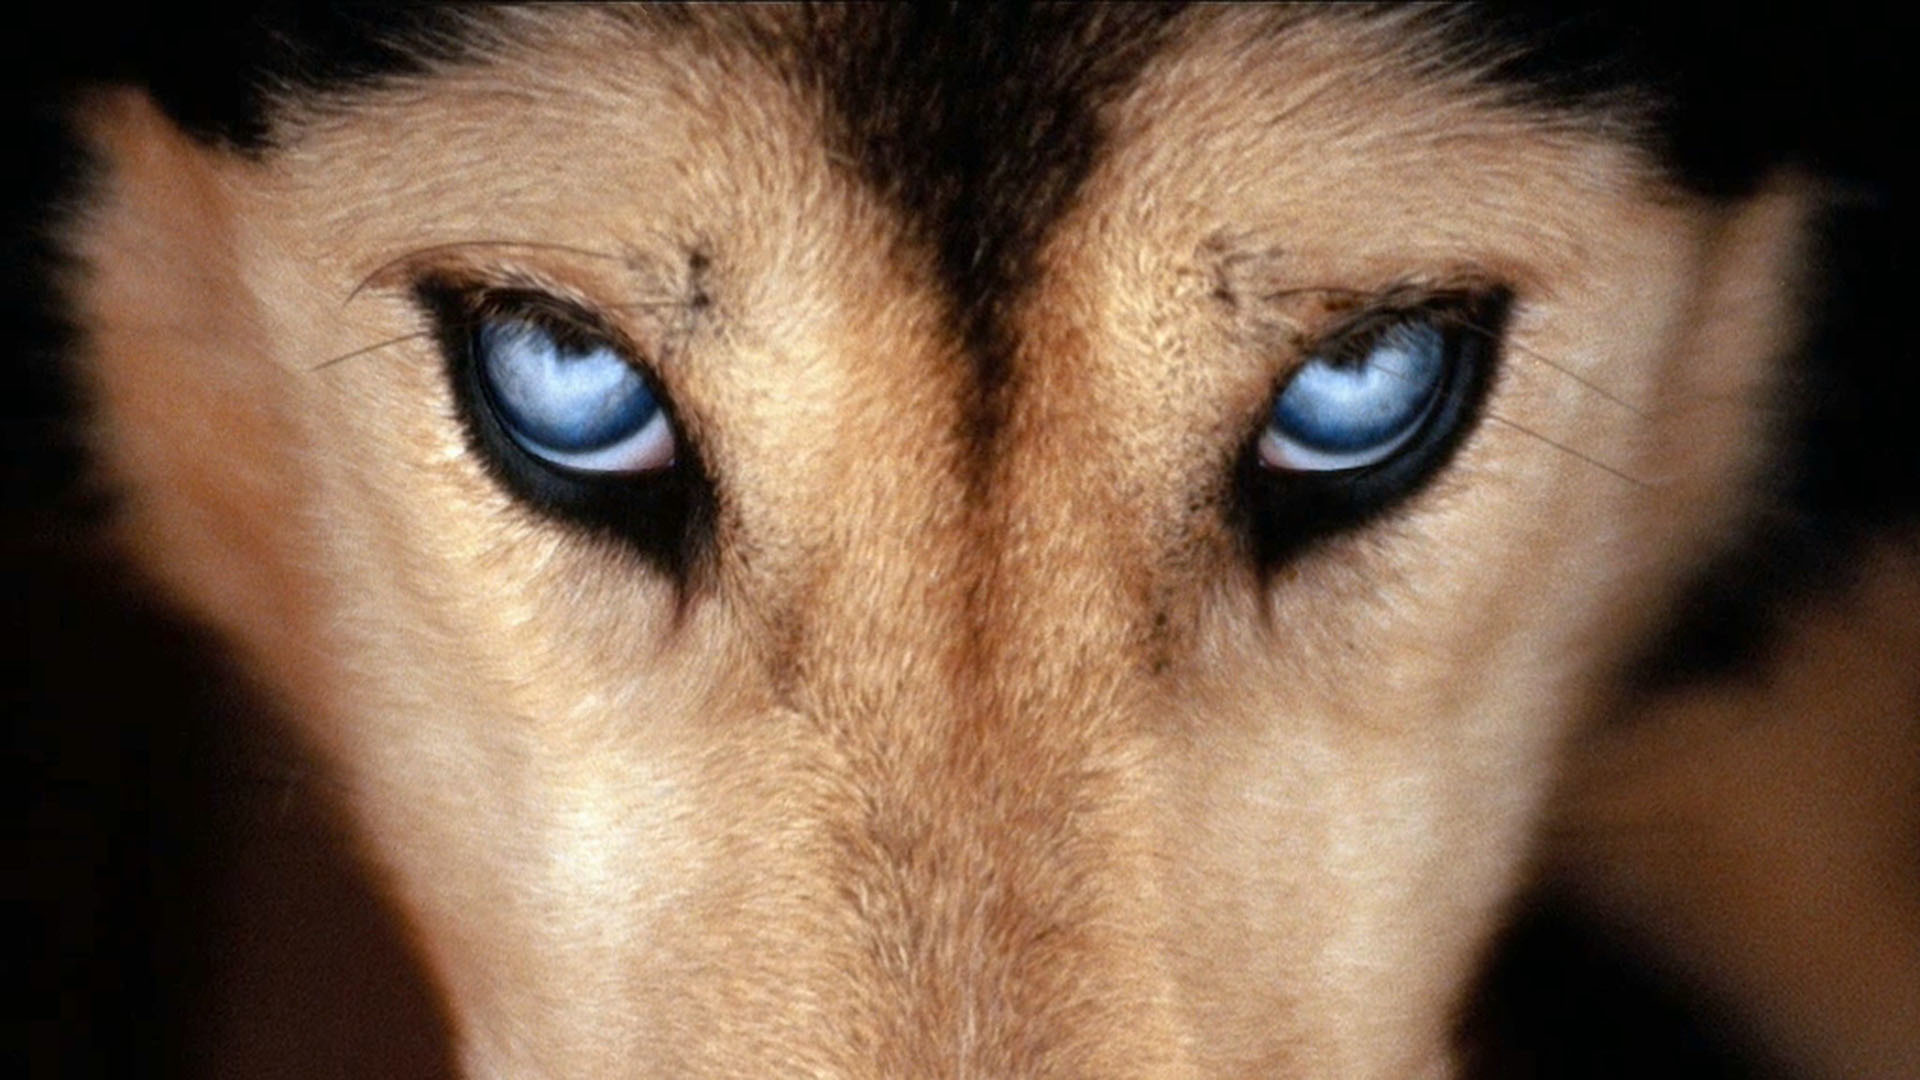 Волчьи глаза